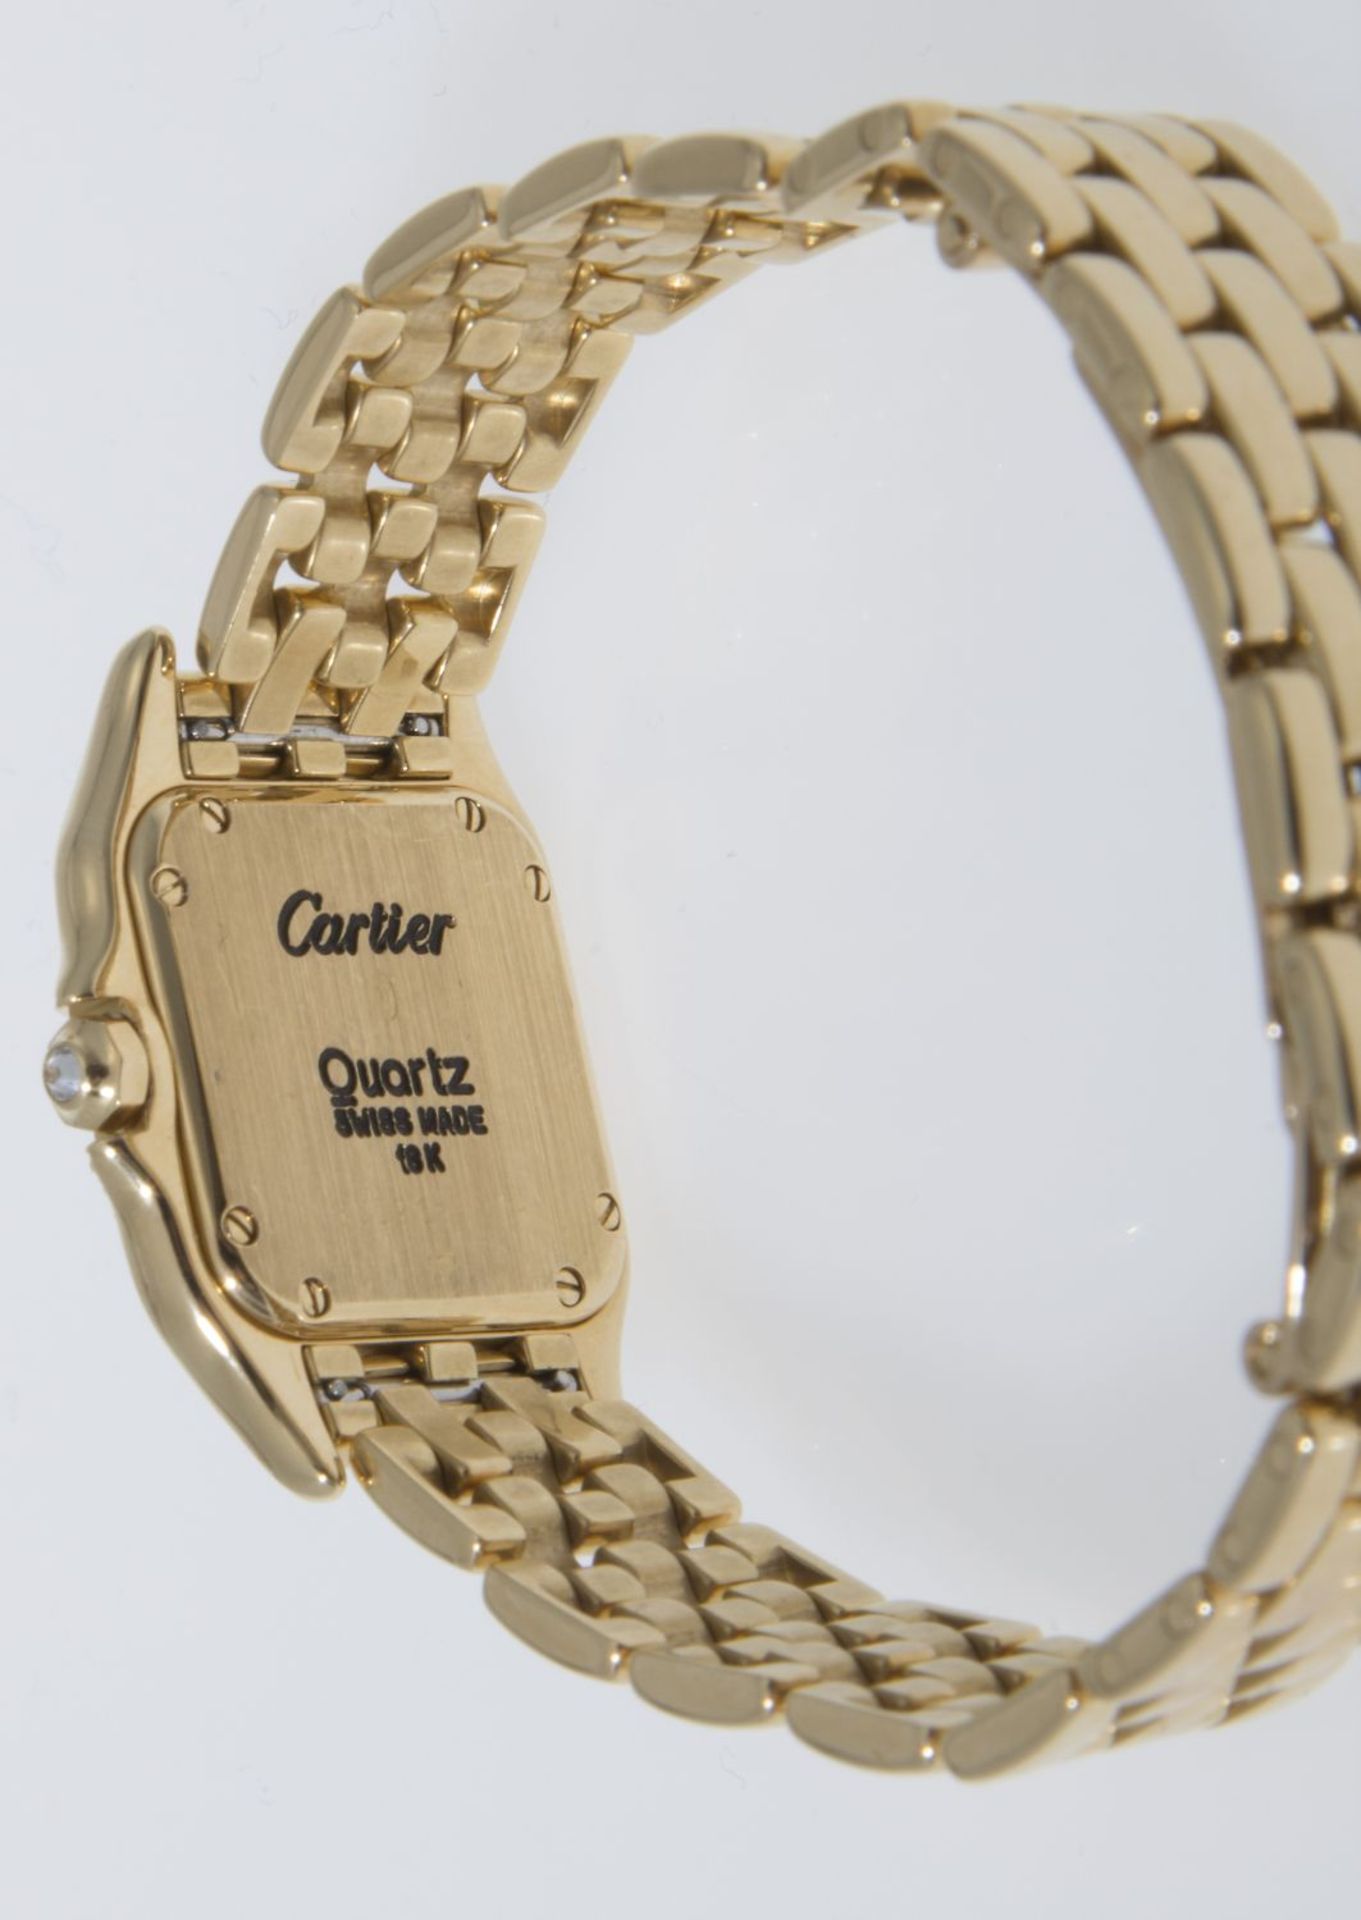 Cartier-Damenarmbanduhr "Panthère" mit reichem Diamant-BesatzGehäuse und Armband aus Gelbgold 750. - Bild 3 aus 3